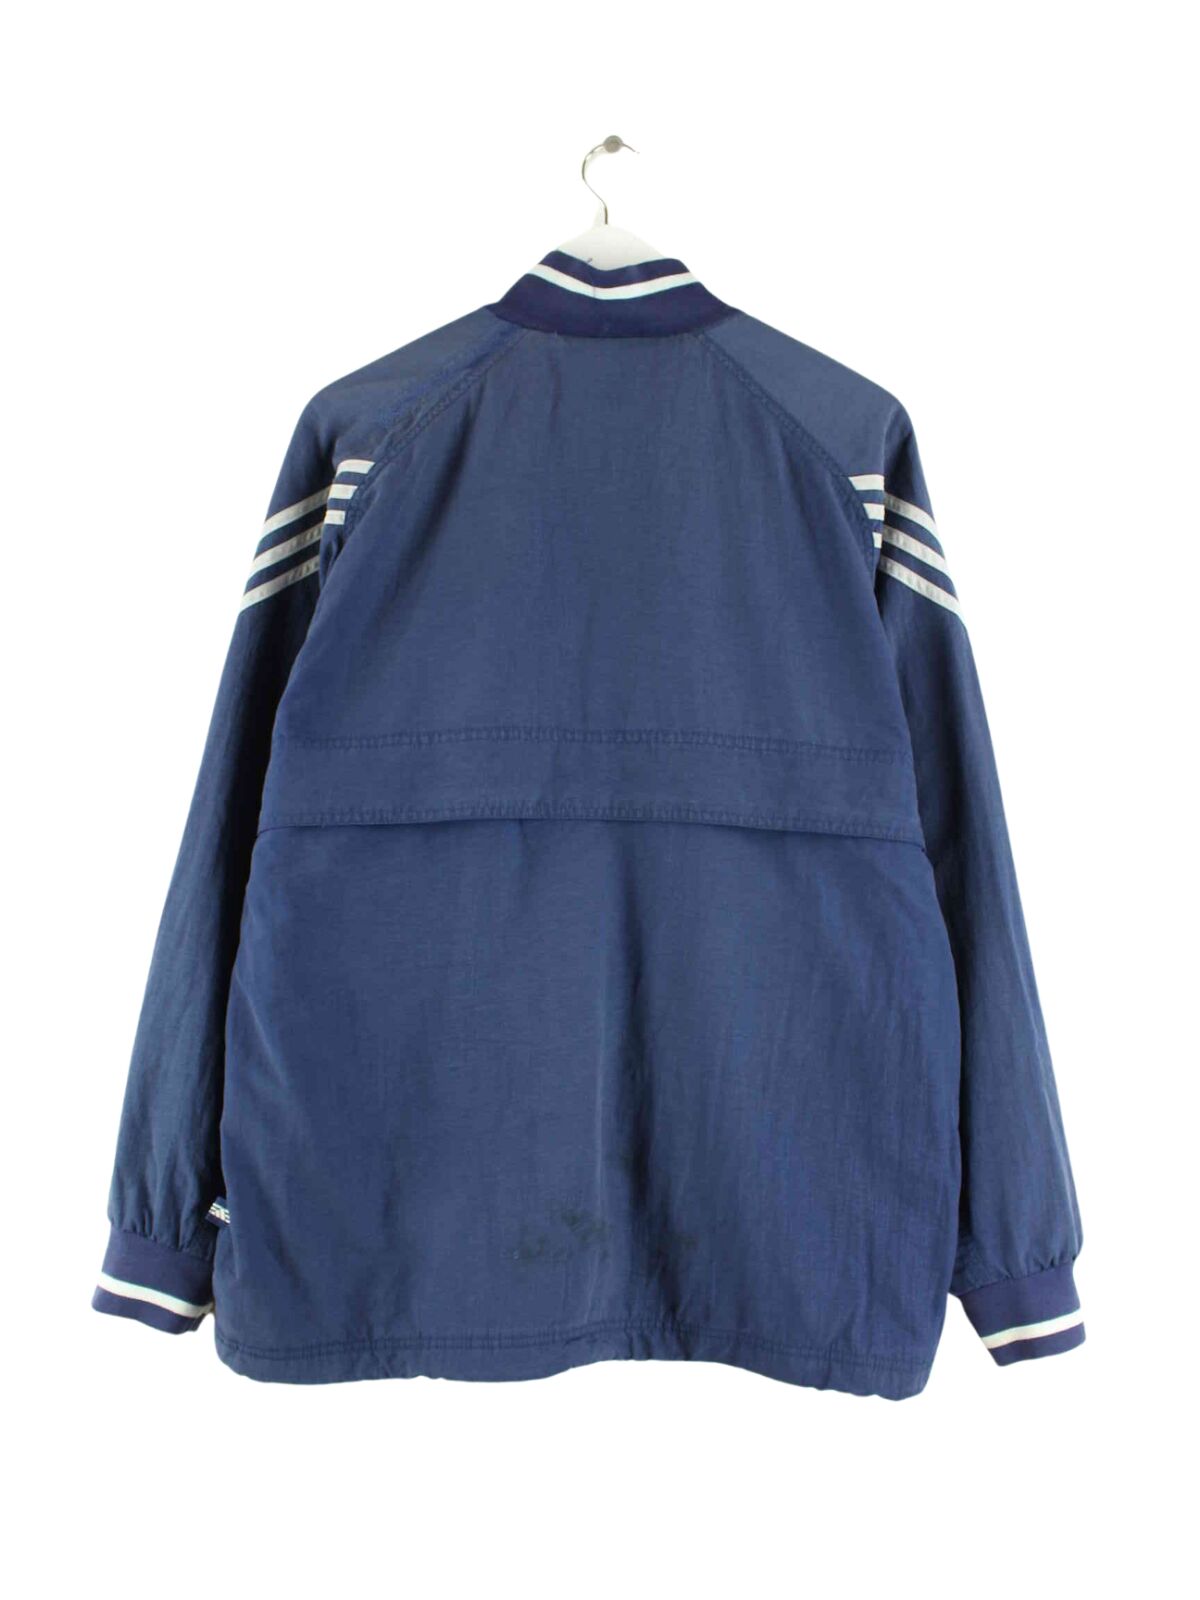 Adidas 90s Vintage 3-Stripes Jacke Blau M (back image)